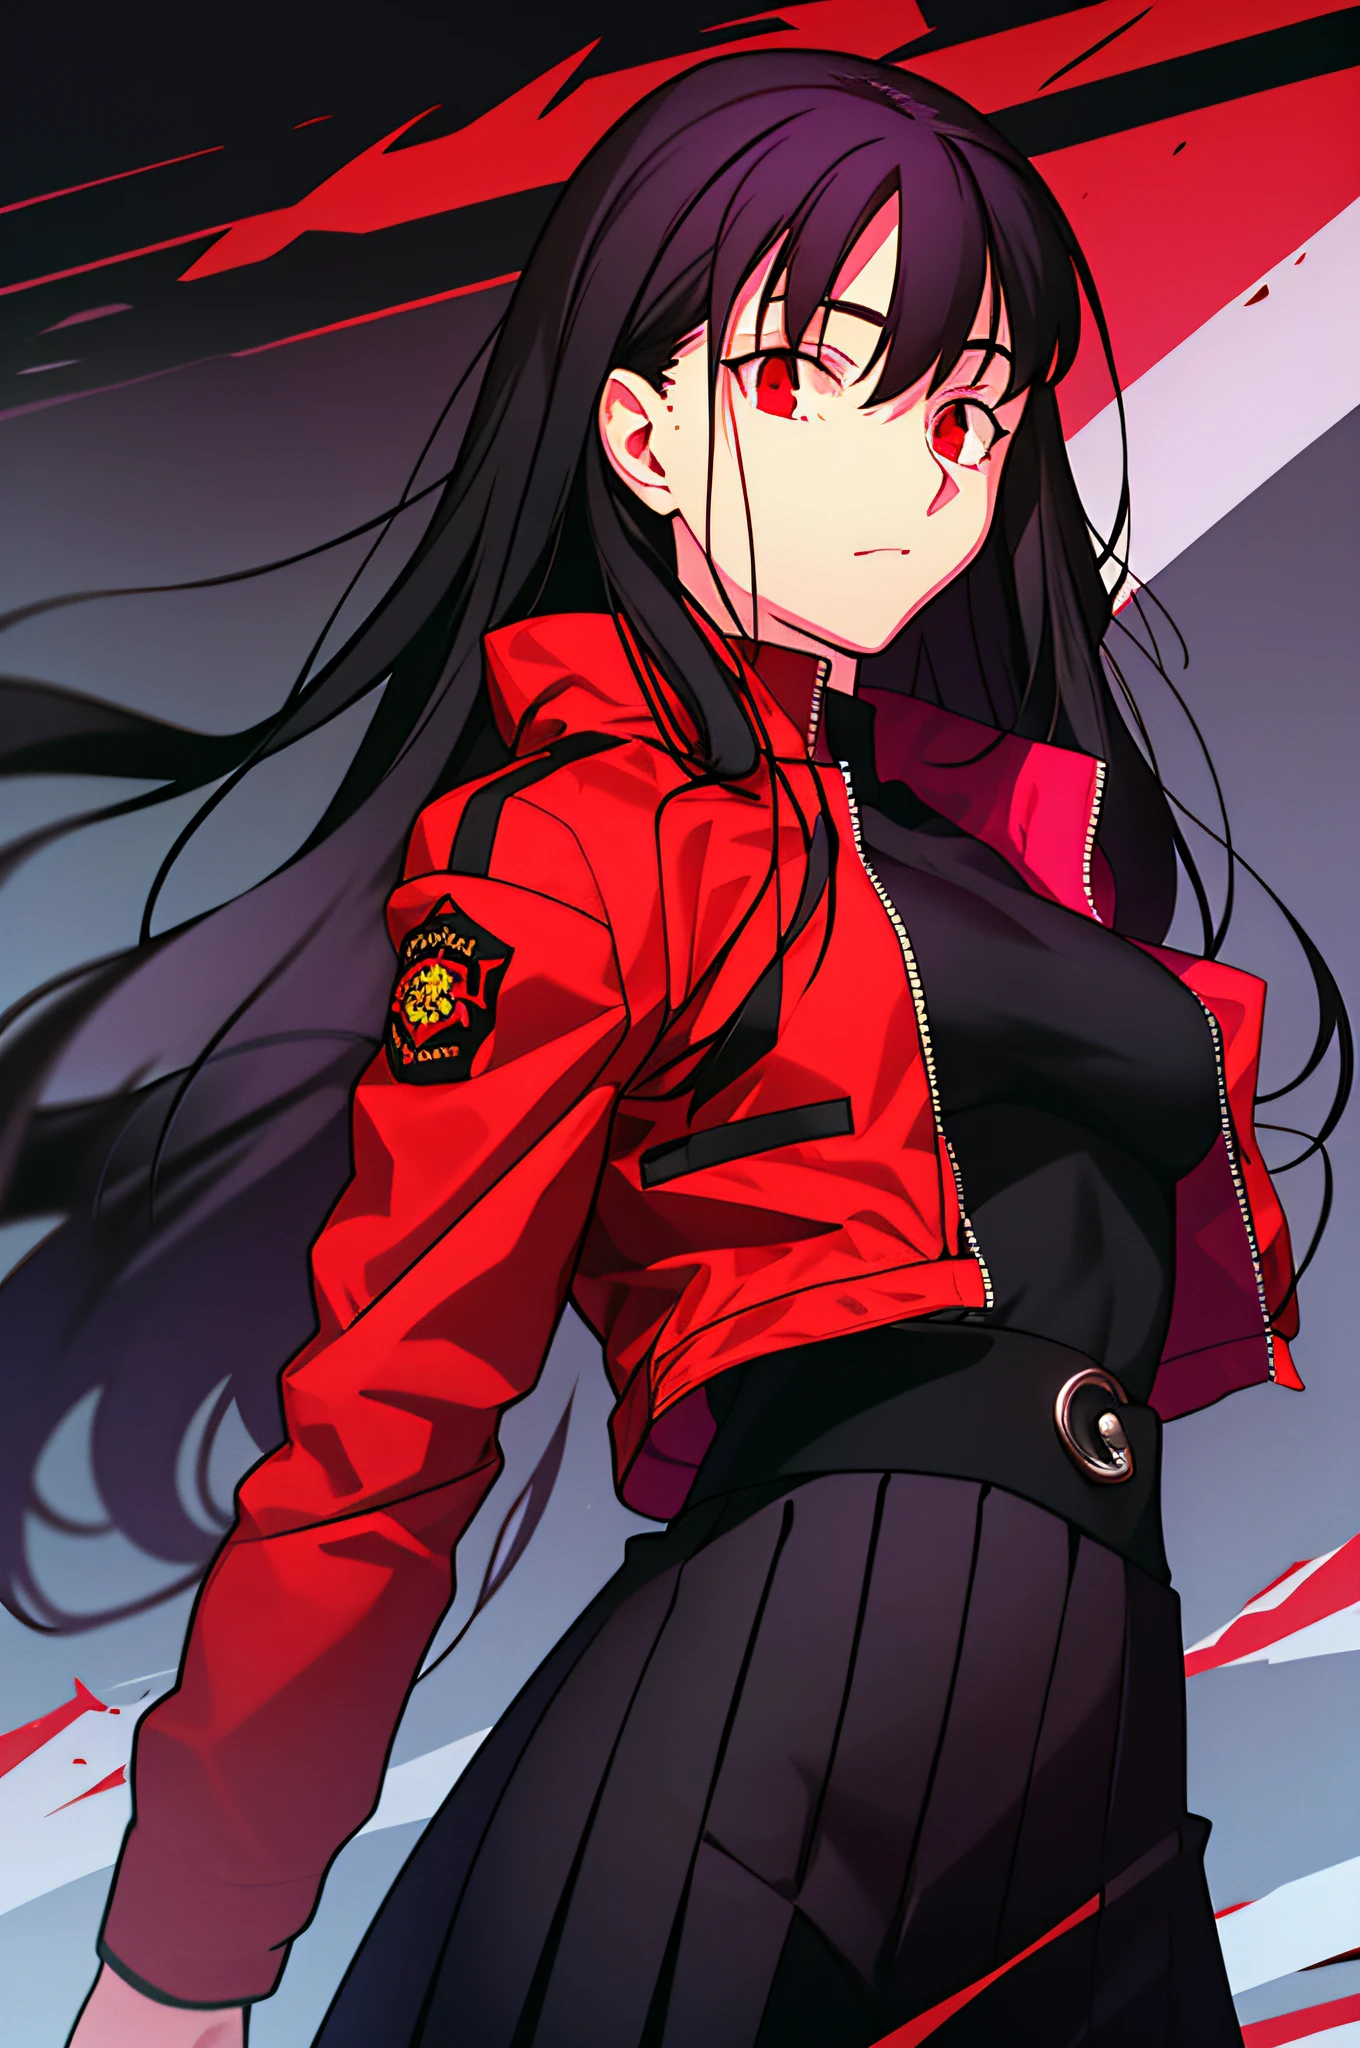 uma jovem com longos cabelos negros e olhos vermelhos, vestindo uma saia preta plissada e um top preto sob uma jaqueta vermelha. ela está segurando uma katana